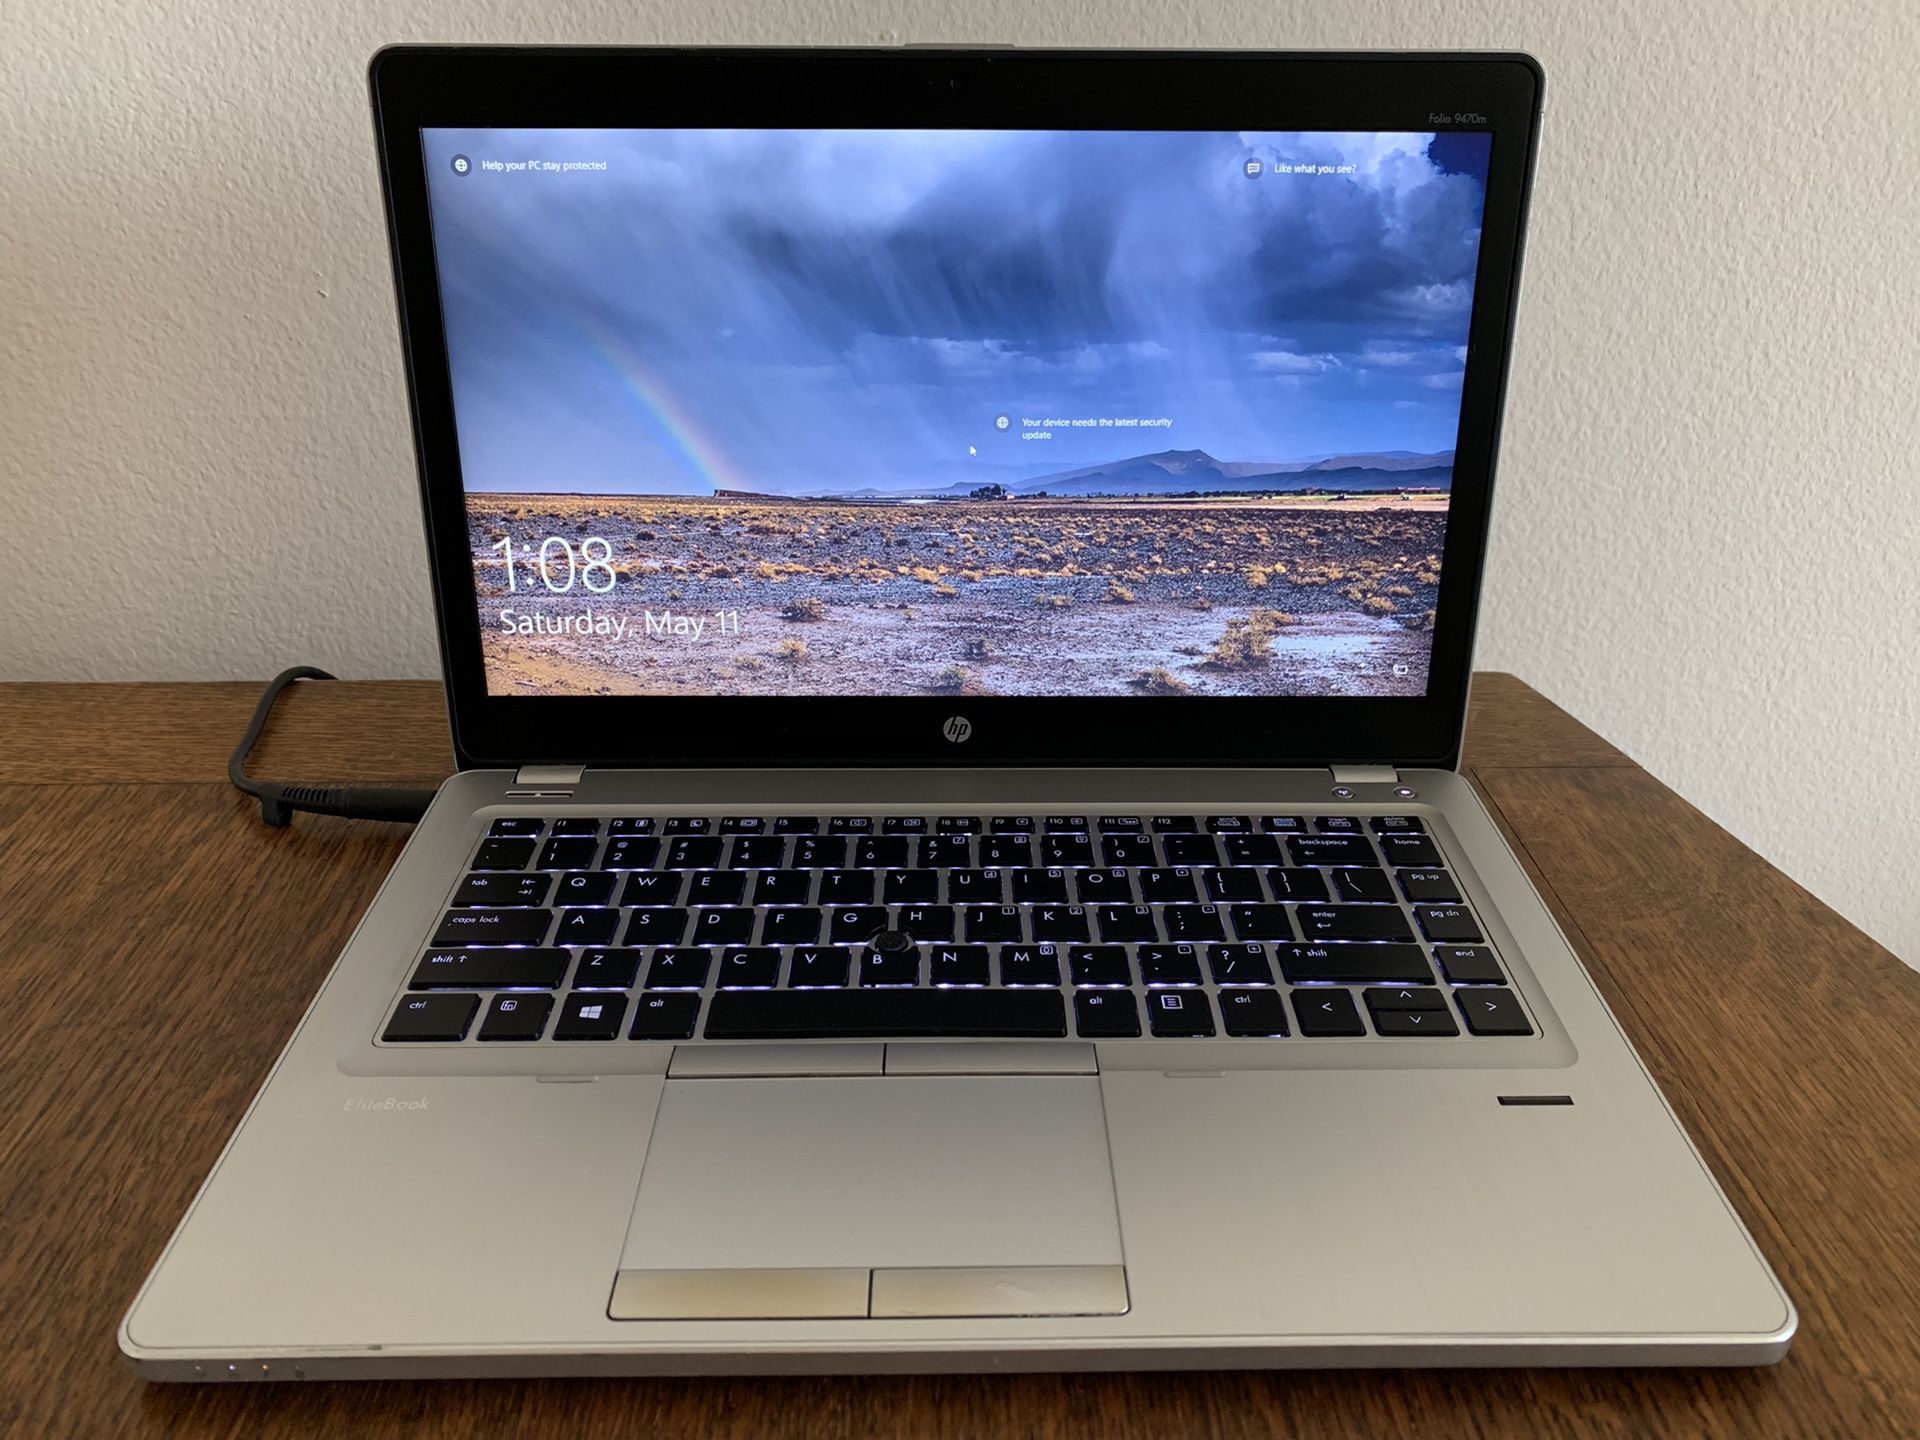 HP Folio 9470m Laptop